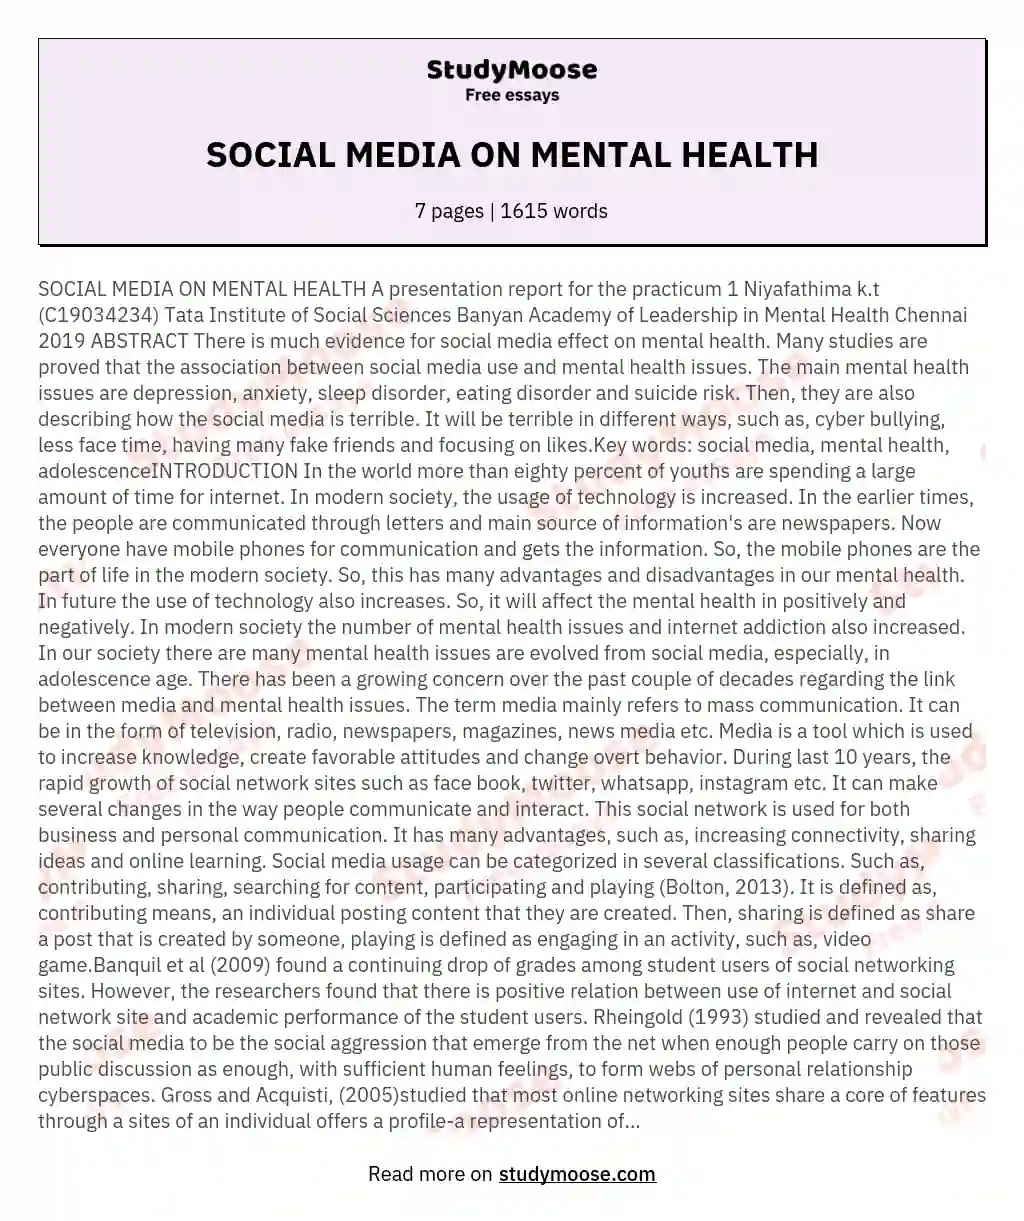 SOCIAL MEDIA ON MENTAL HEALTH essay